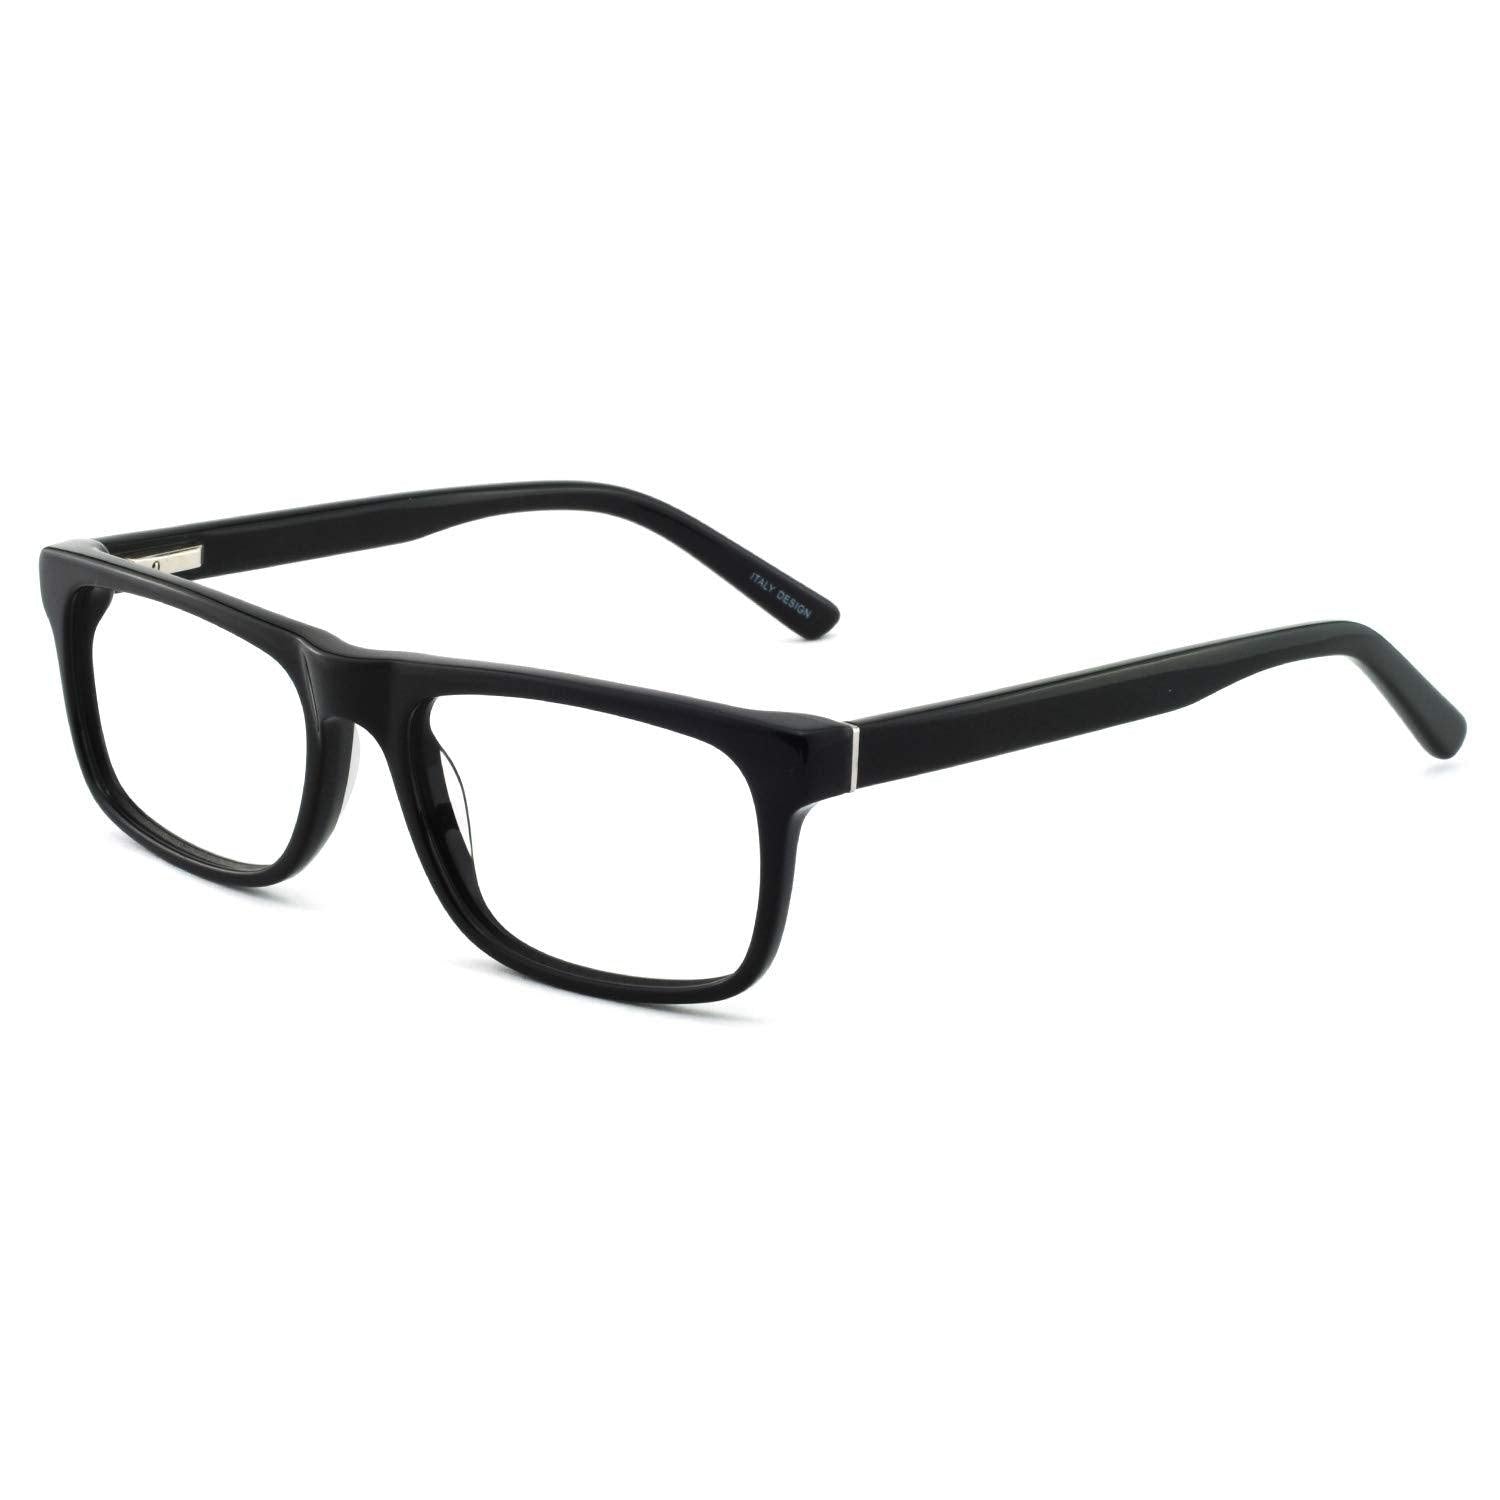 OCCI CHIARI Blue Light Rectangle Reading Glasses for Men 1.0 1.5 2.0 2.5 3.0 3.5 - Occichiari 